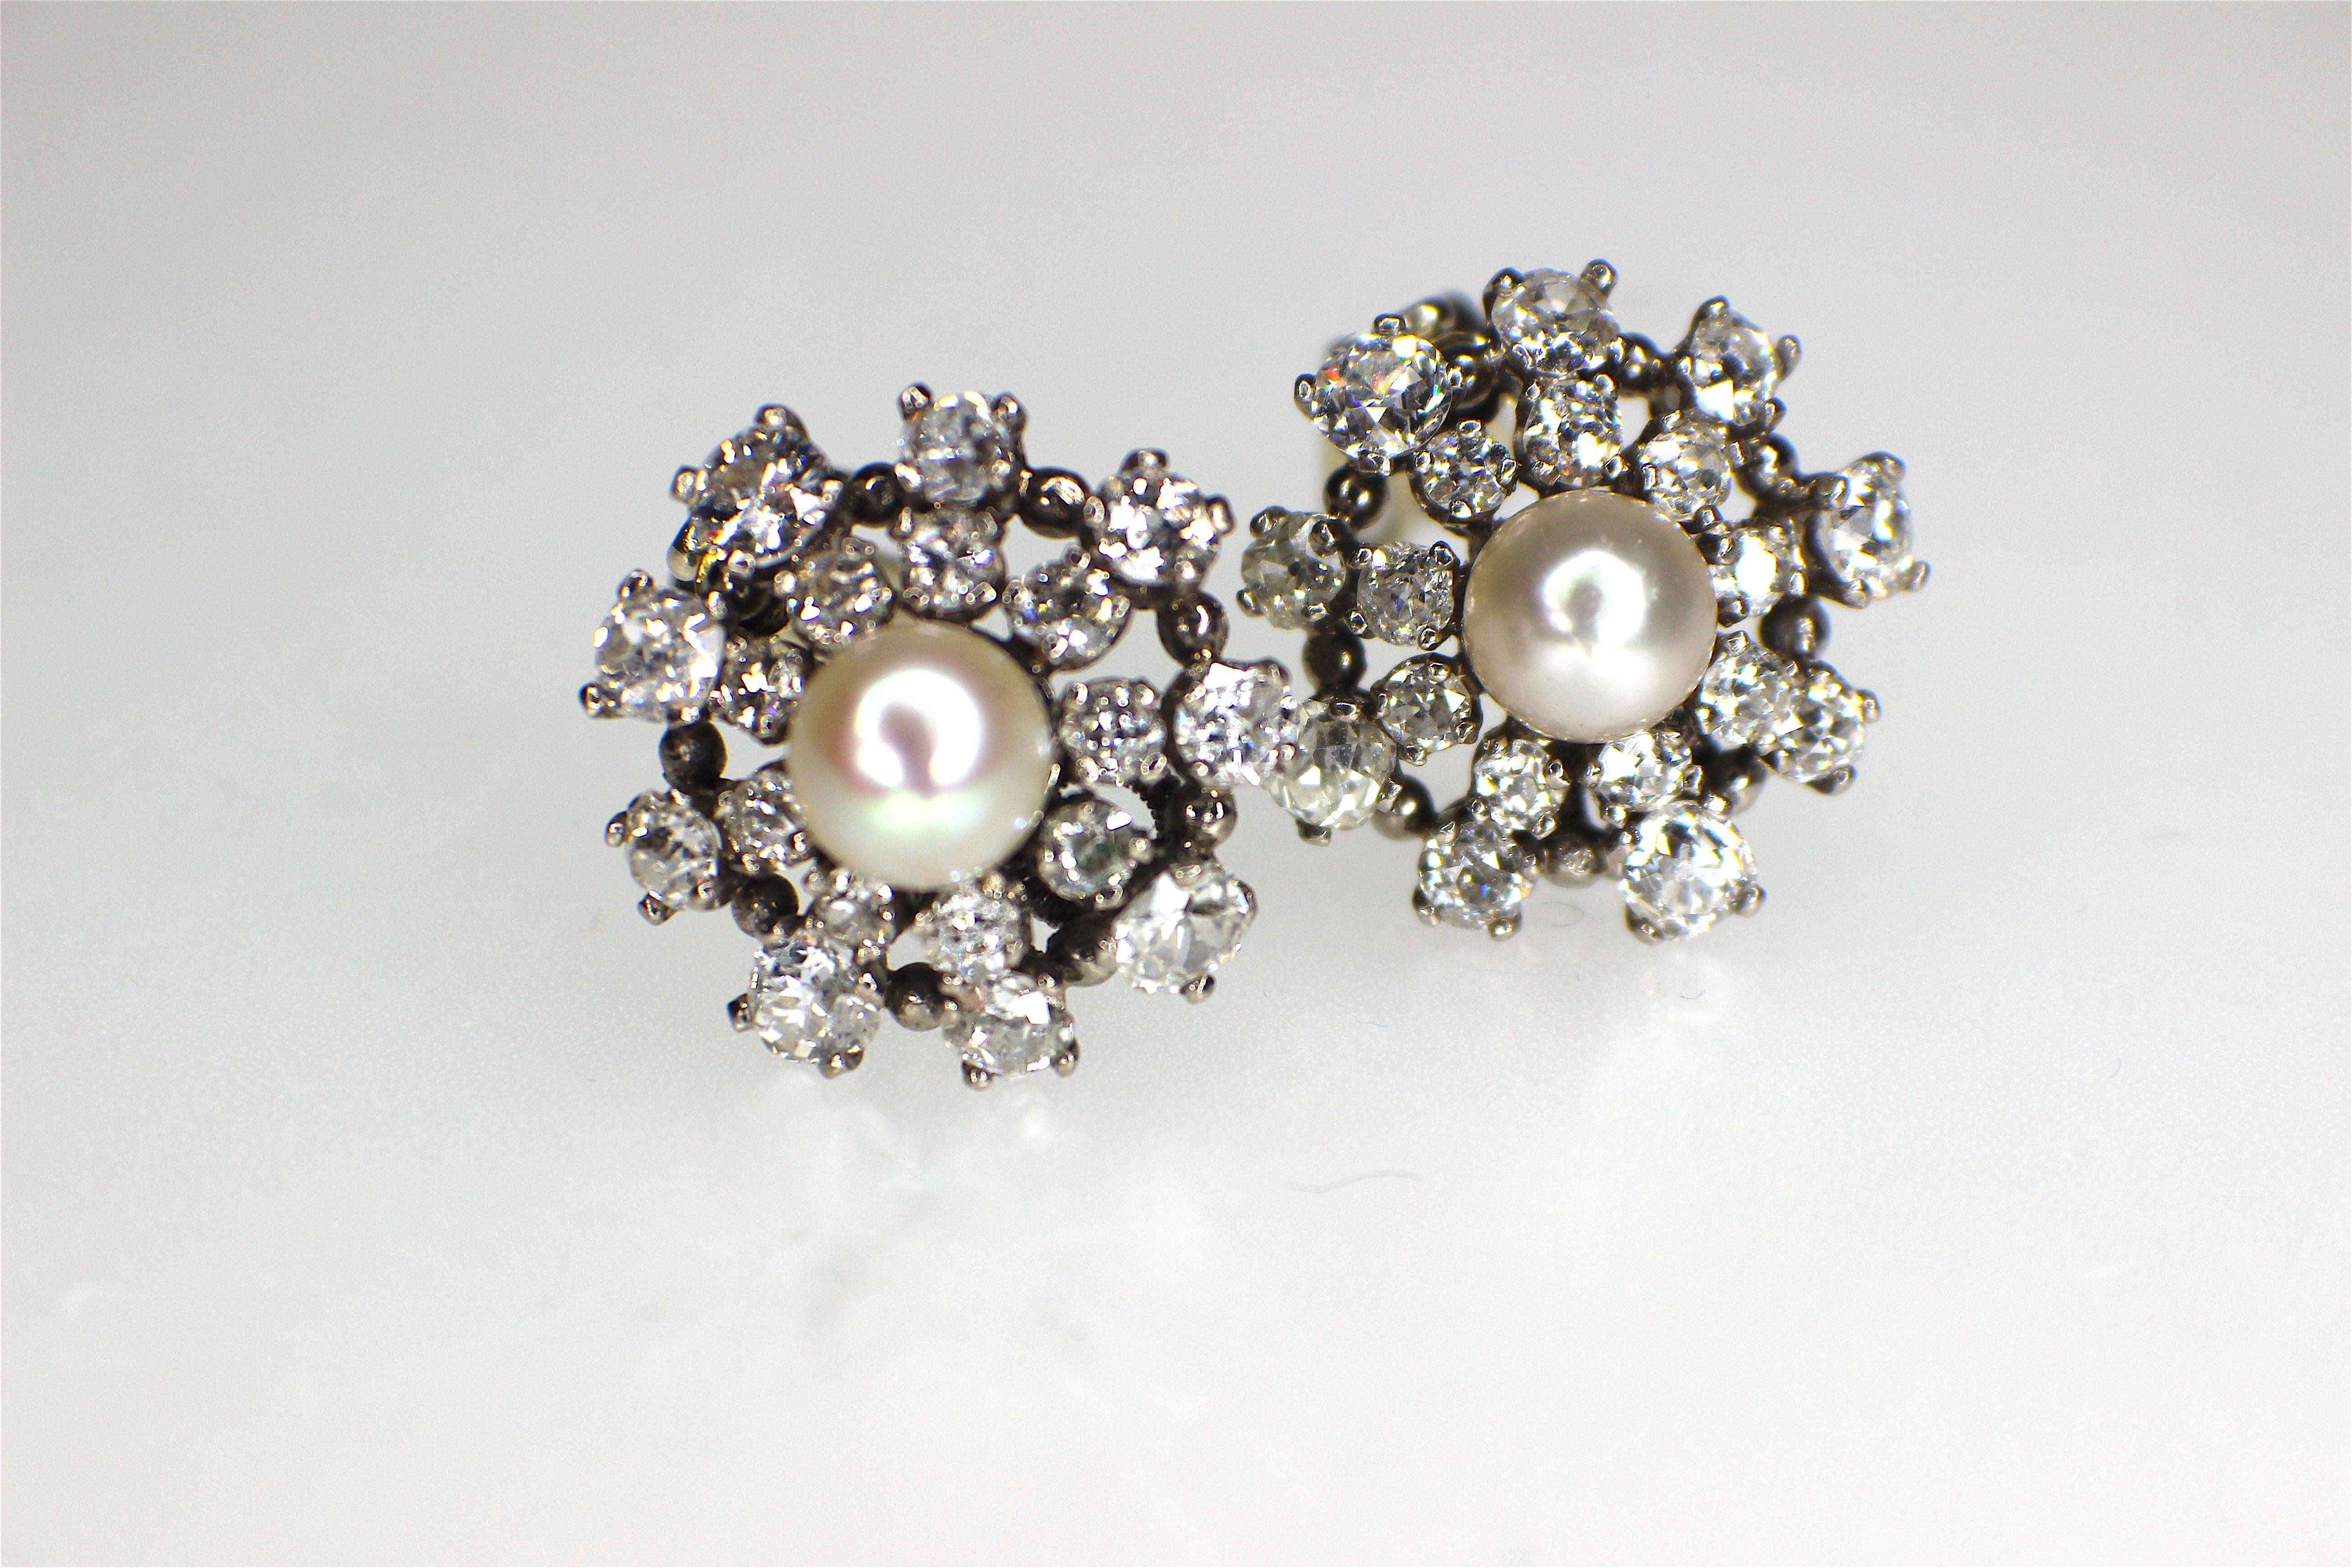 Ein schönes Paar Ohrringe aus Platin mit natürlichen Perlen und Diamanten, ca. 1950. Perlenbericht #10975, der besagt, dass es sich um natürliche Salzwasserperlen mit den Maßen 7,0x6,2 mm und 6,8-6,9x6,2 mm handelt